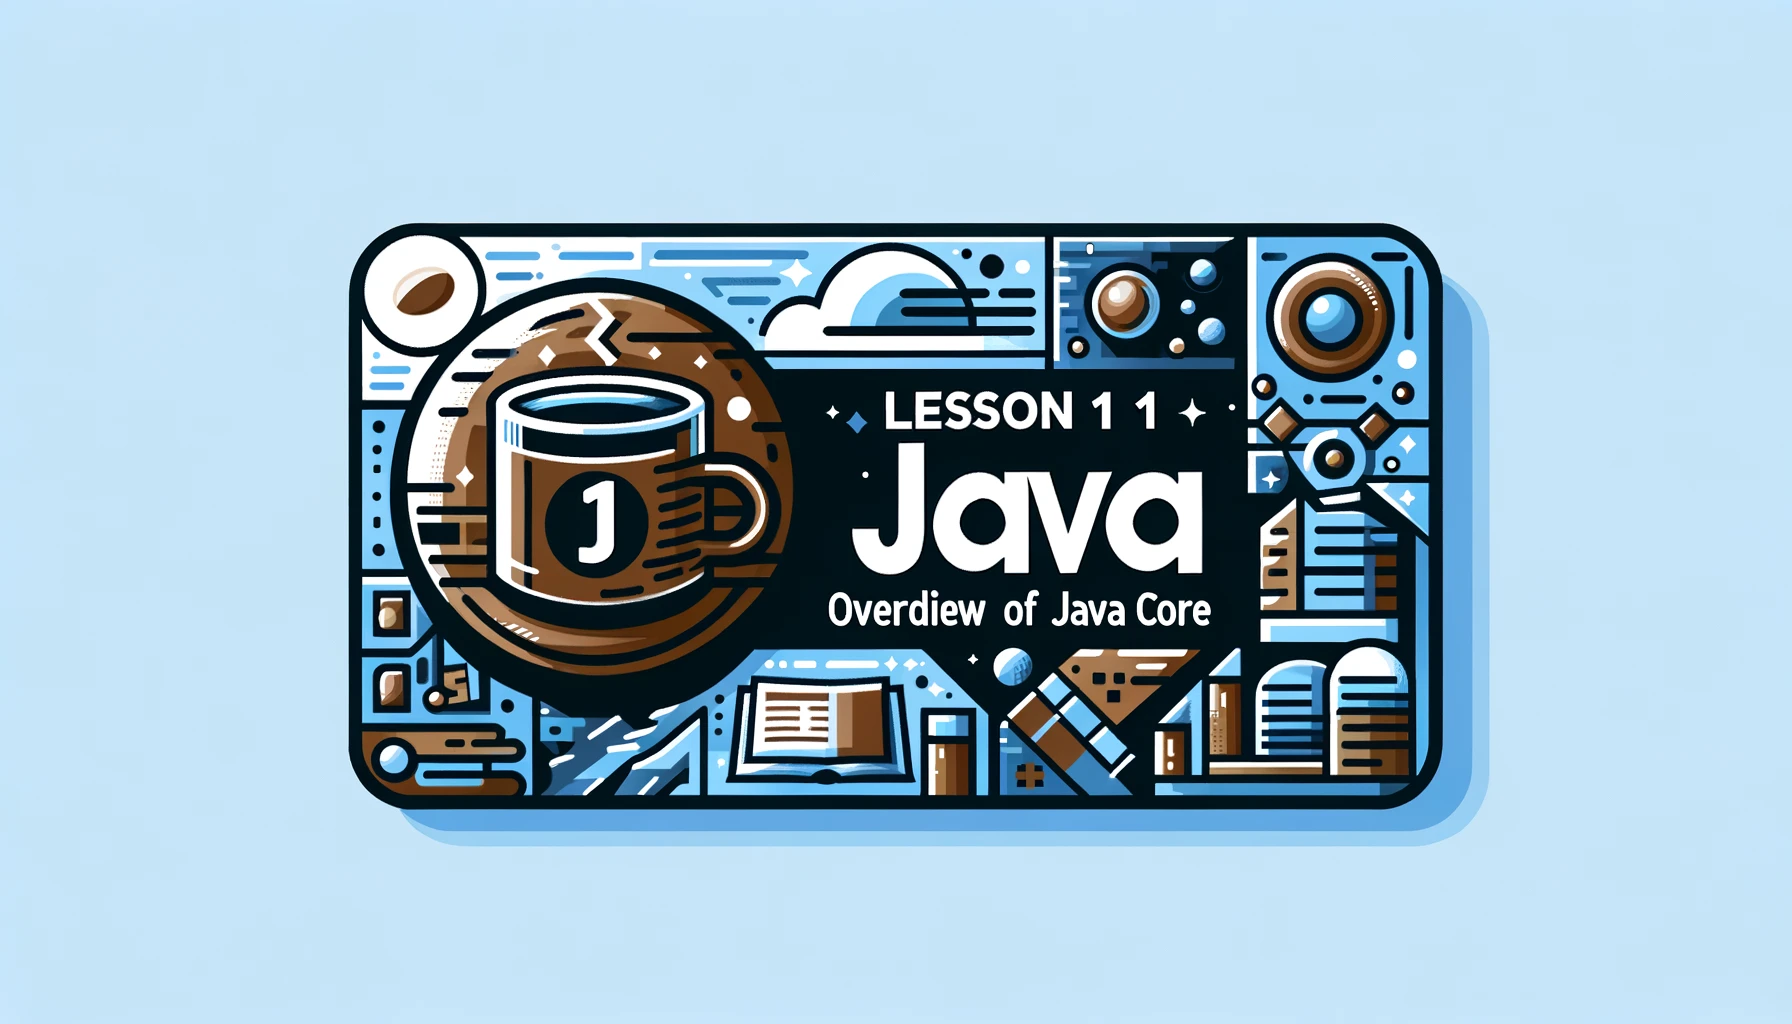 Lesson 1 - Giới thiệu tổng quan về Java Core